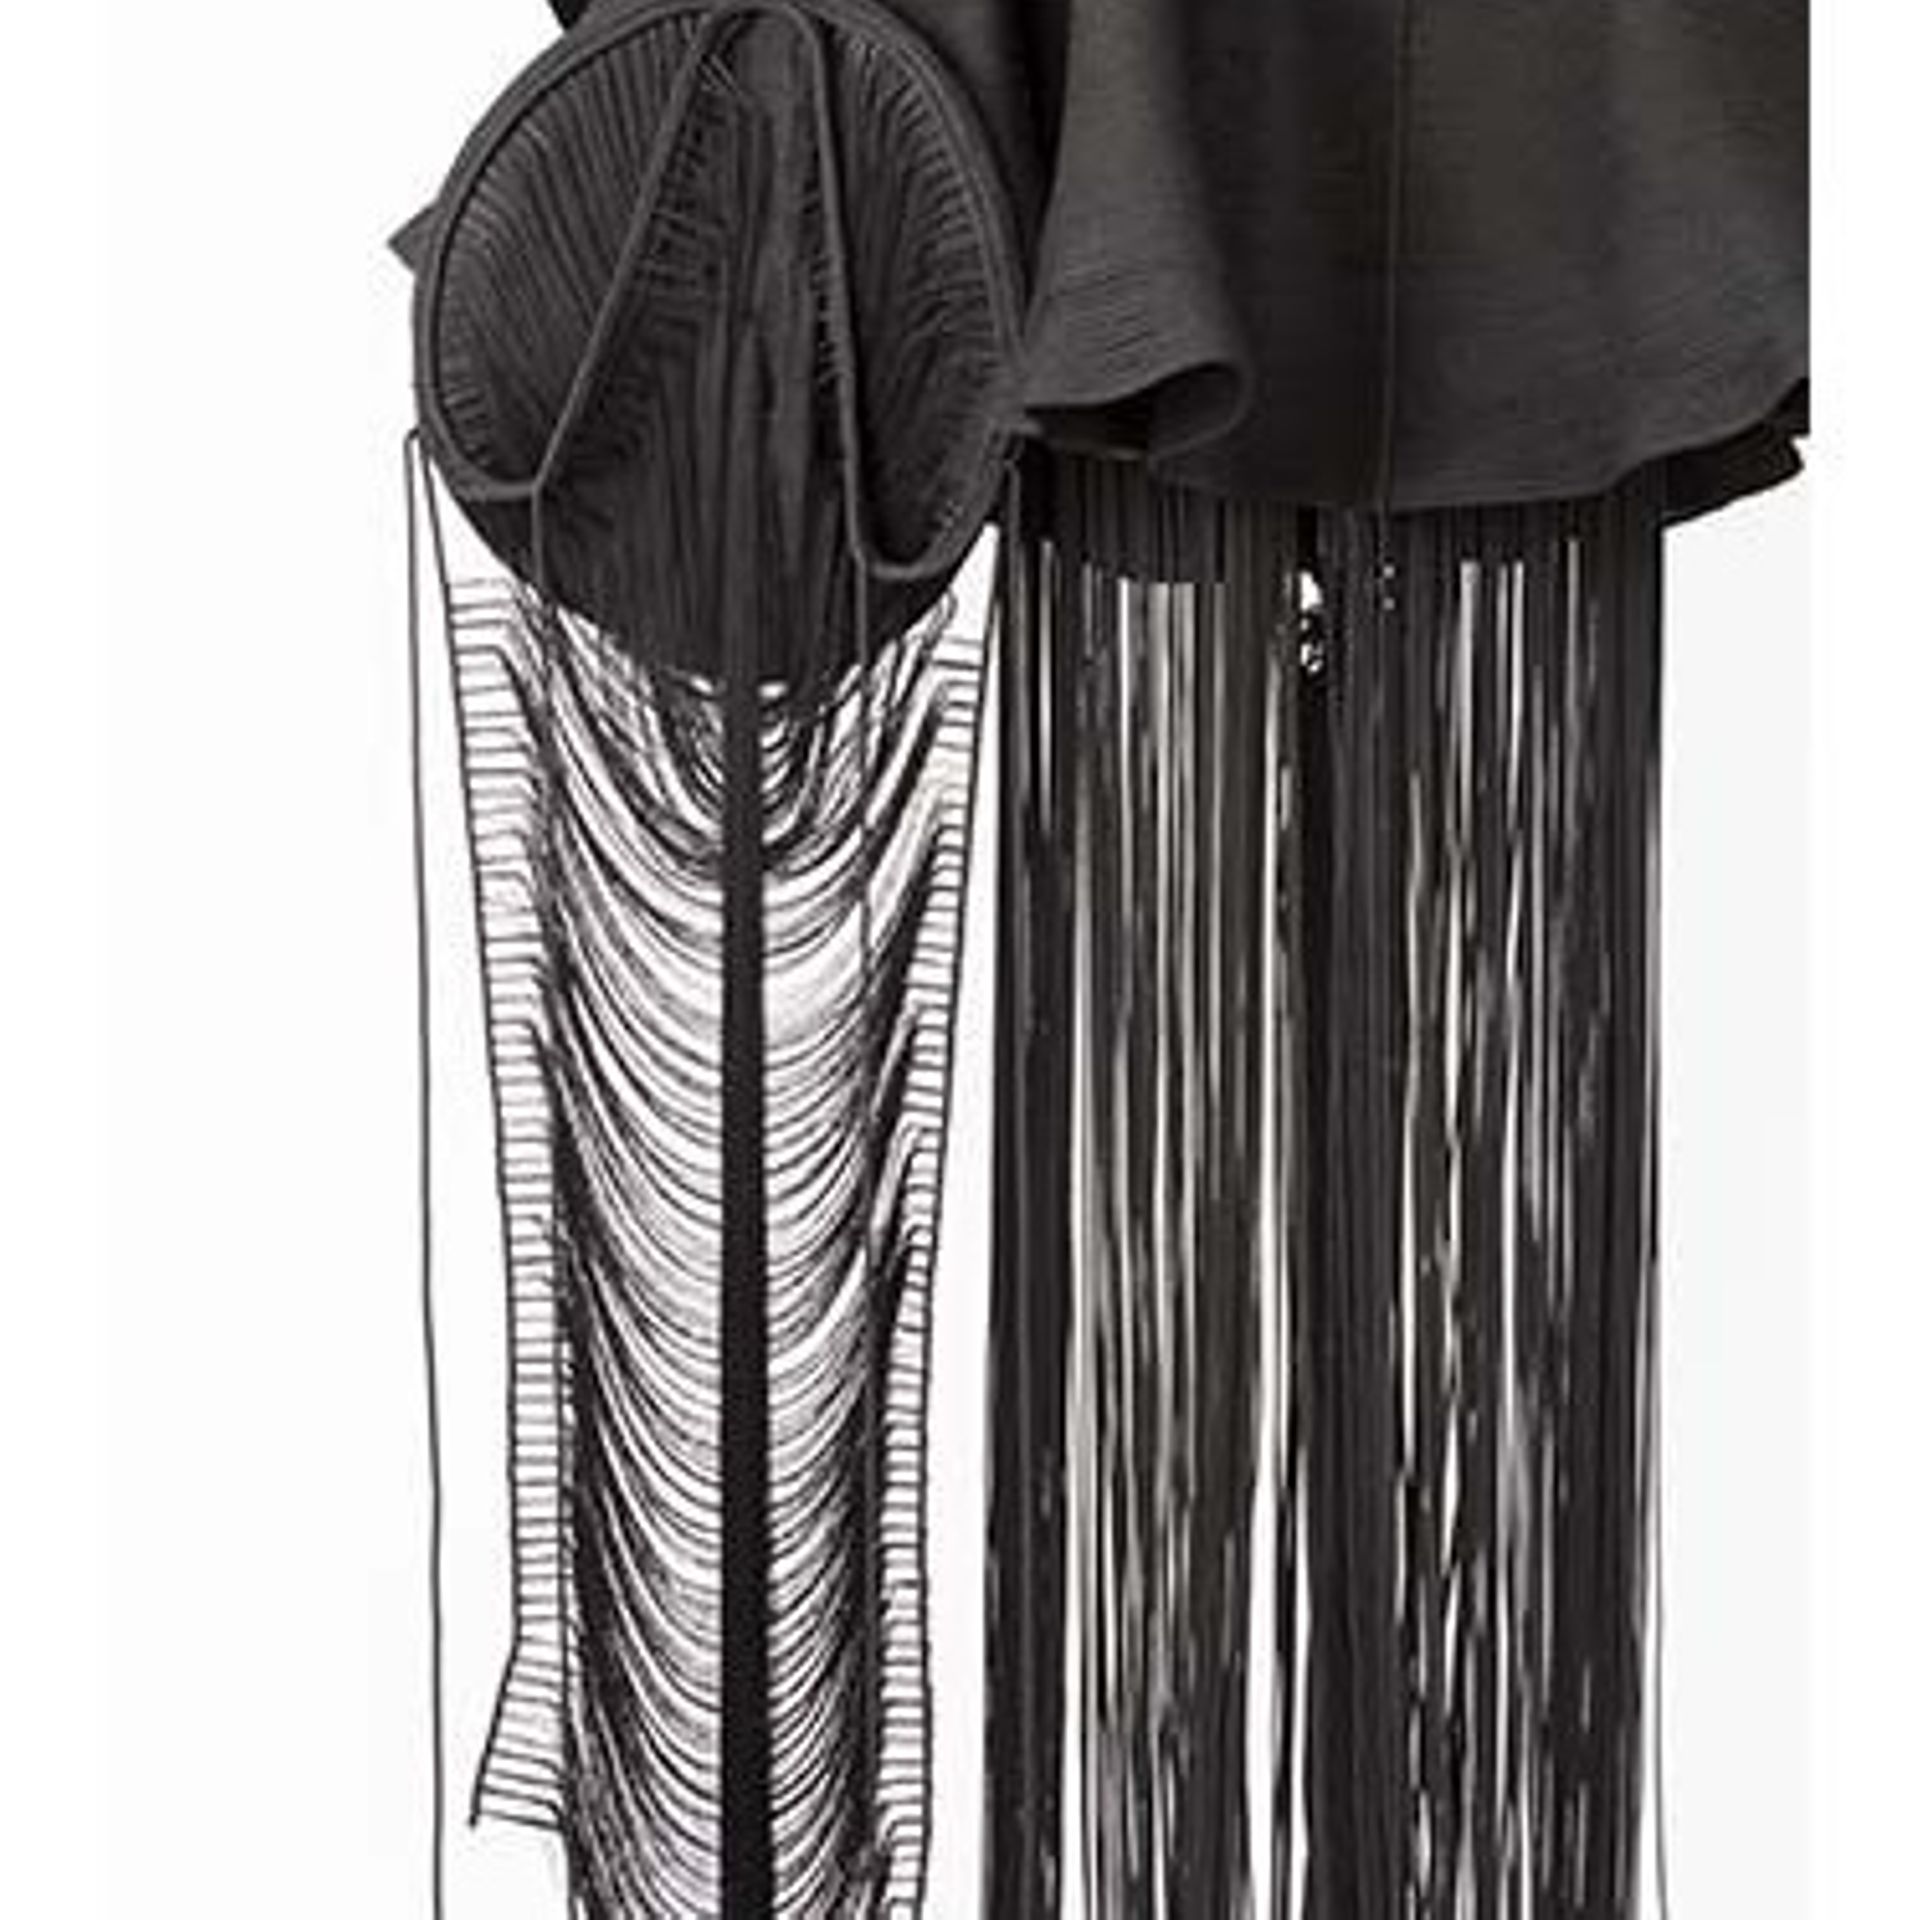 Armor n°1, Jeanne Vicerial ,2020  Textile, fils, cordes, tricotissage - Courtesy Templon, Paris – Brussels